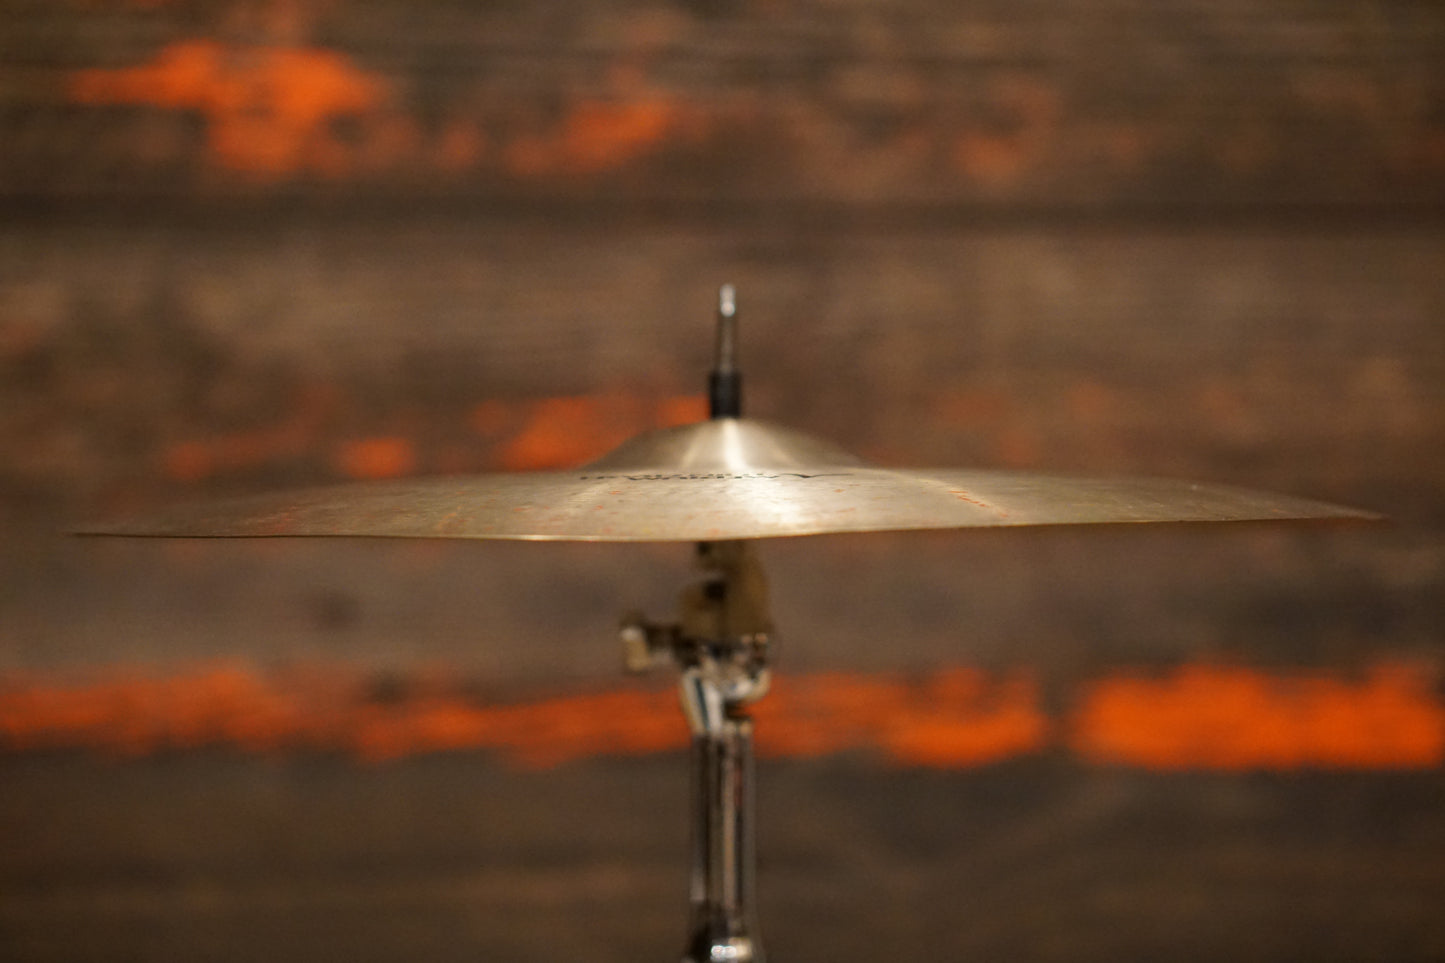 Zildjian 16" Avedis Medium Thin Crash Cymbal - 1186g